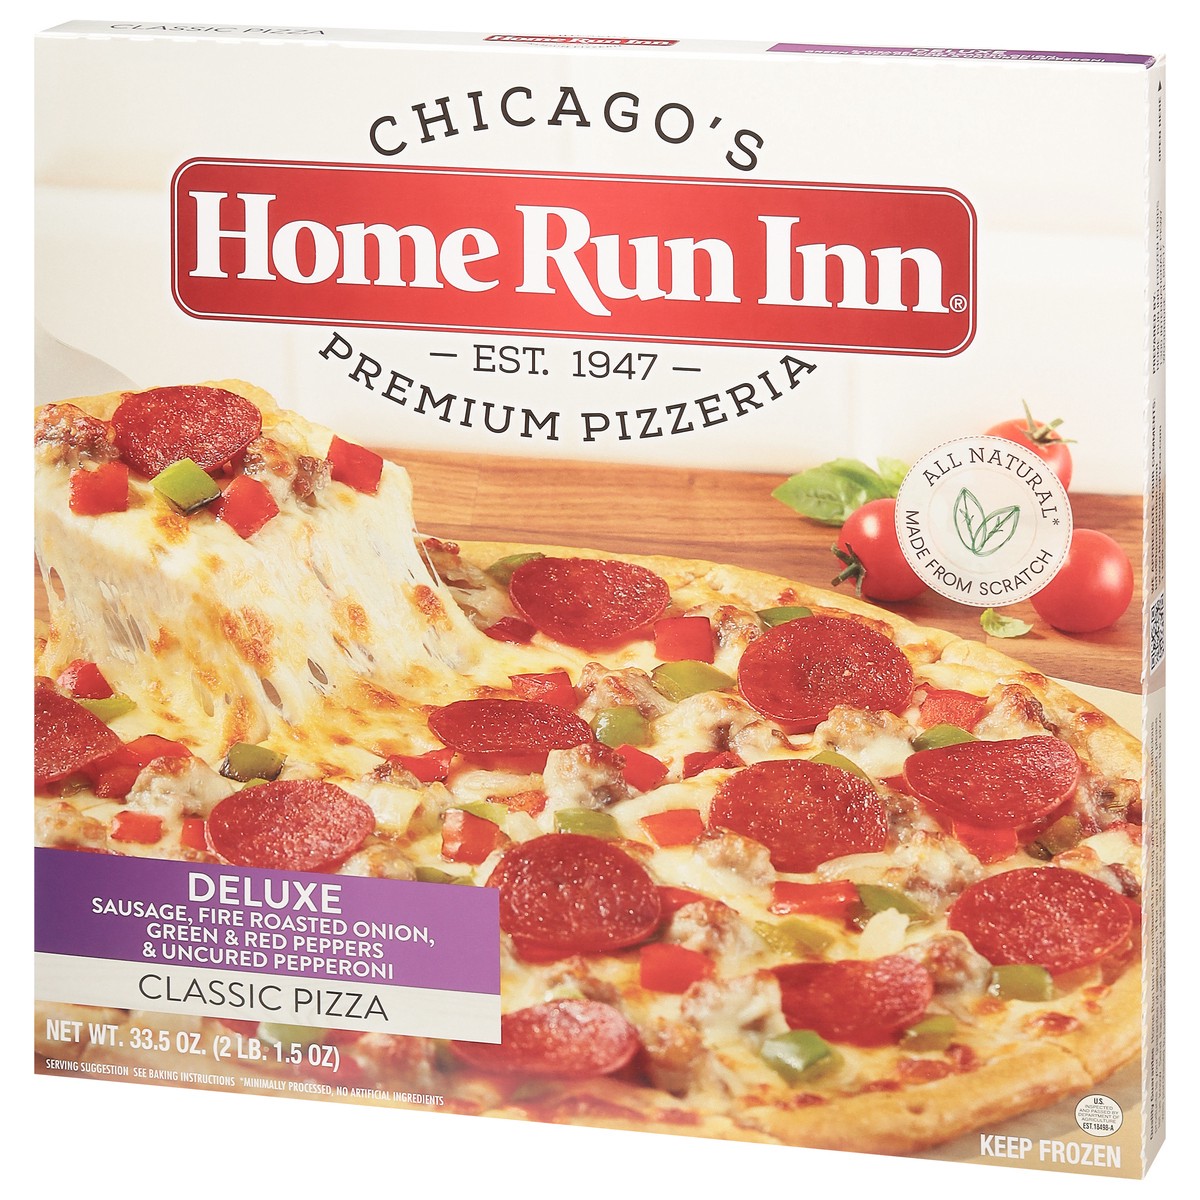 slide 2 of 9, Home Run Inn Home Run Inn Signature Pizza Deluxe, 33.5 oz